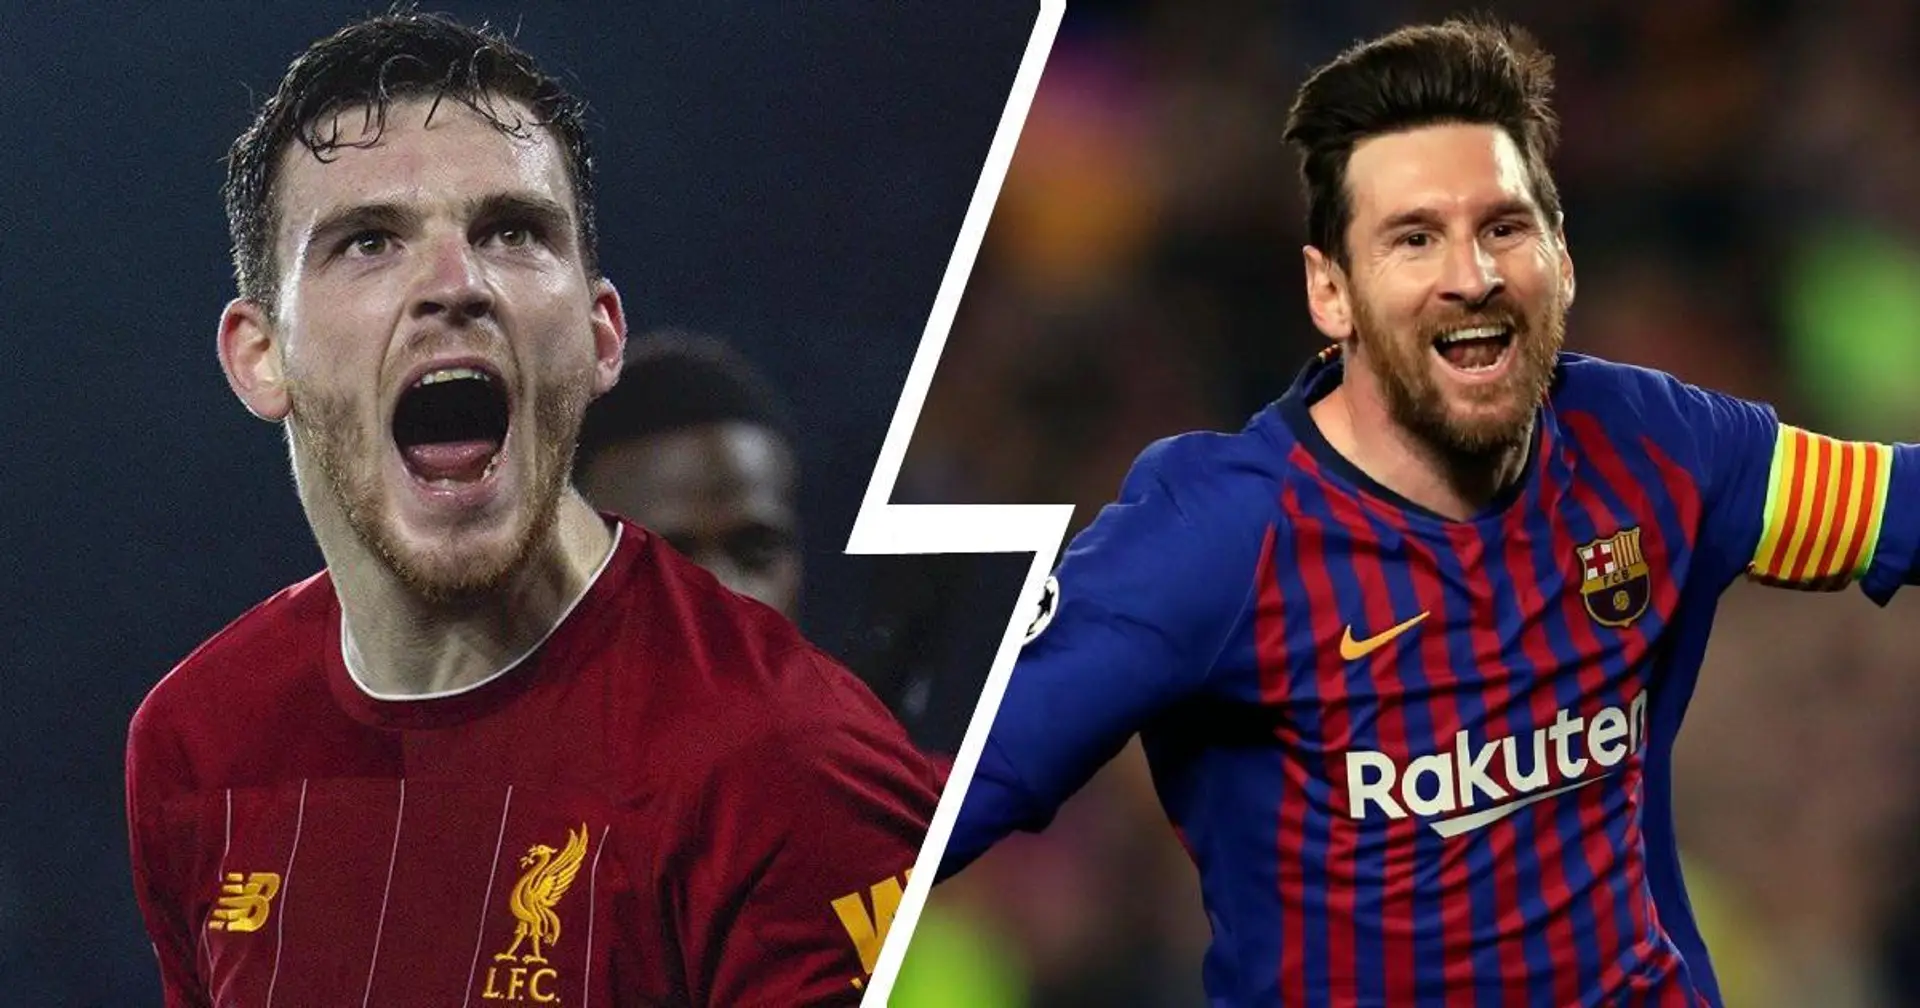 "Put***! Il est face à moi maintenant!": Andy Robertson de Liverpool se souvient d'avoir affronté Leo Messi